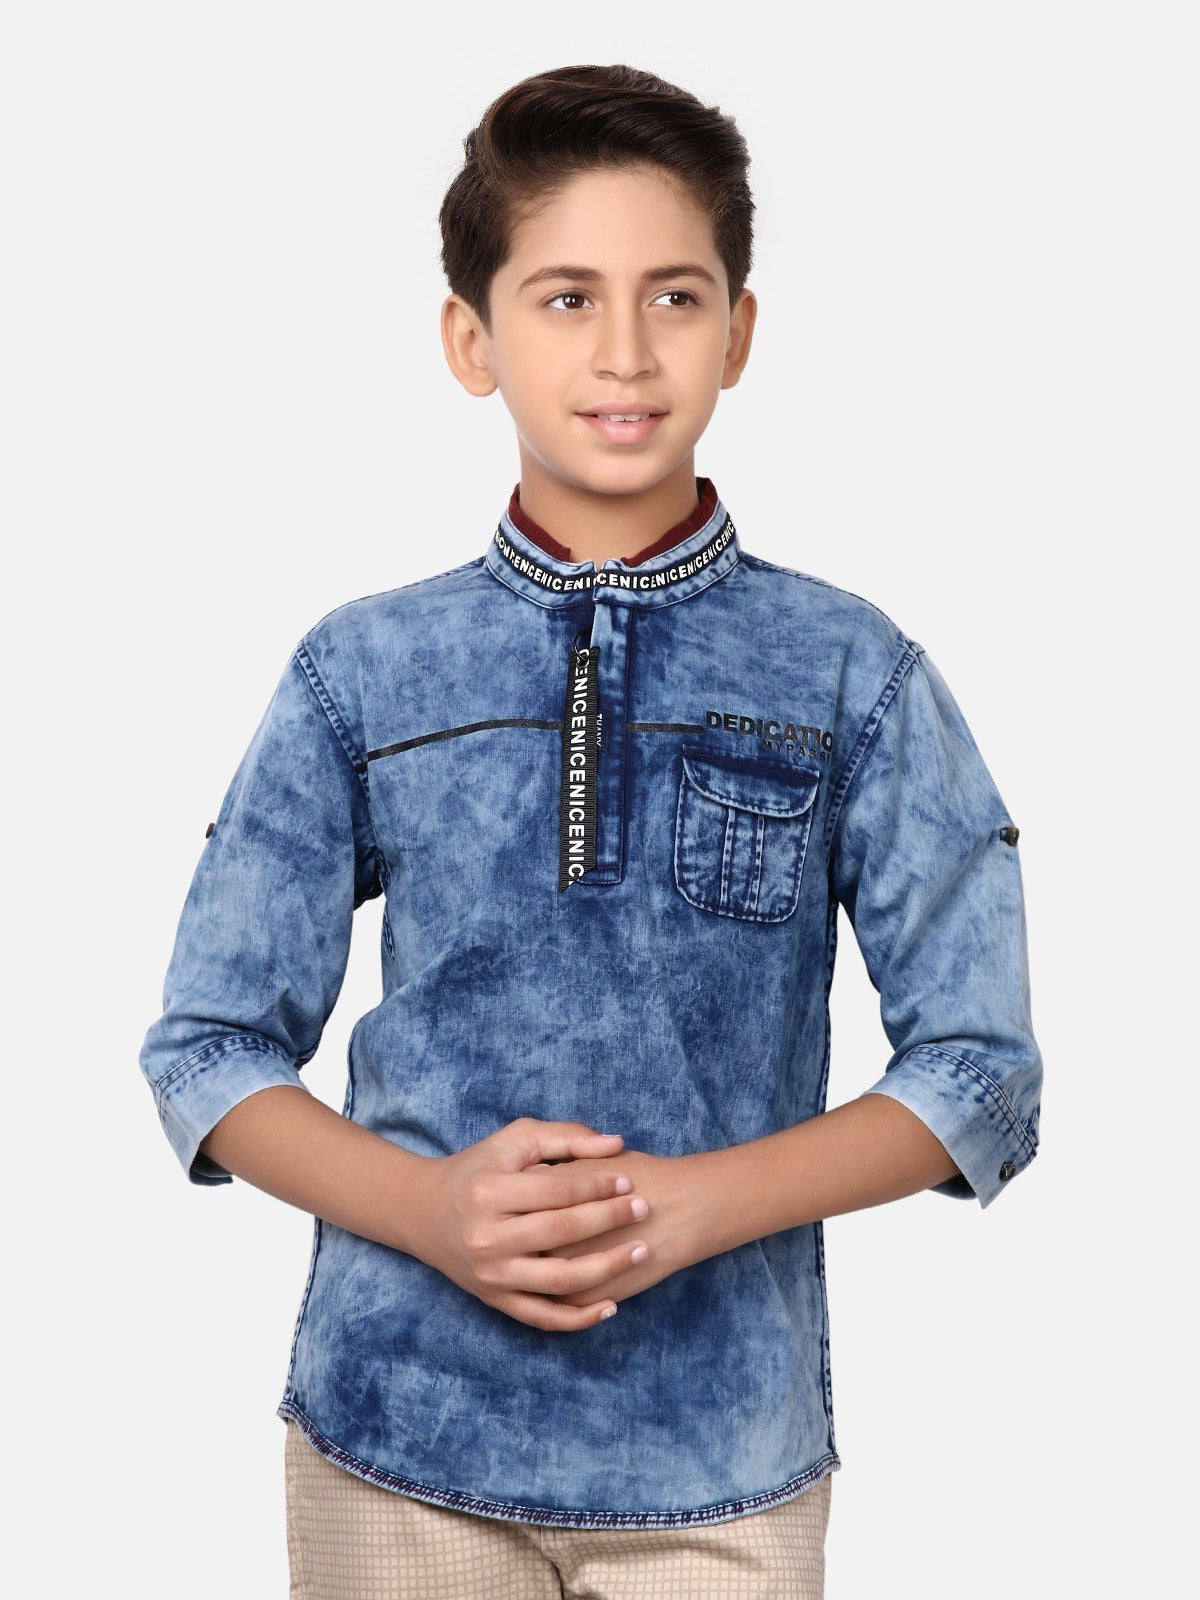 Boy's Blue Shirt - EBTS19-14371